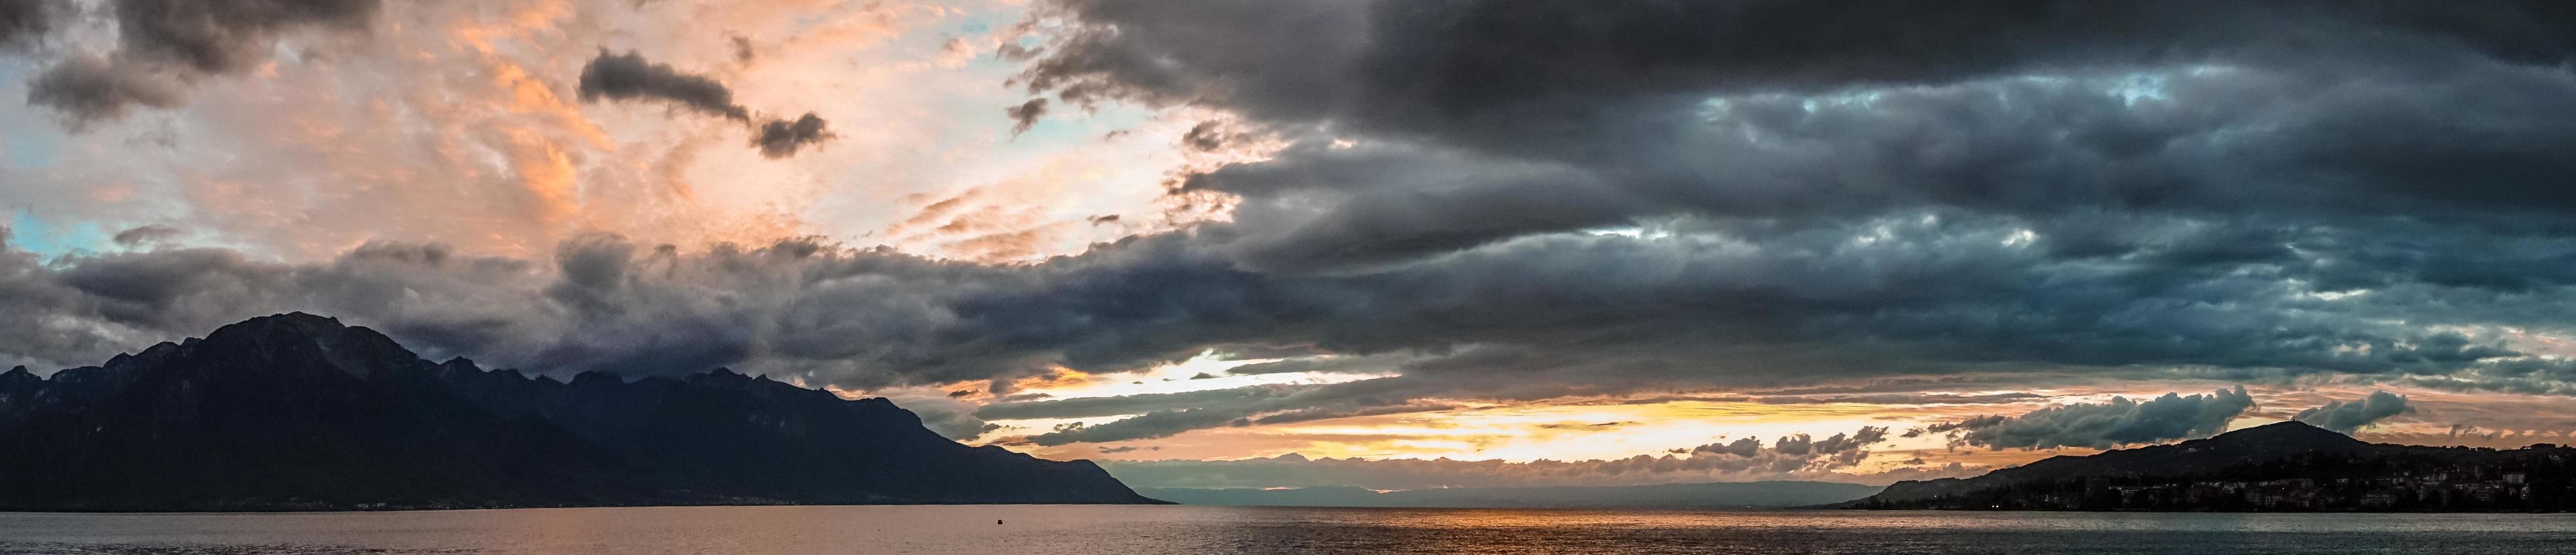 Sonnenuntergang über dem Genfer See in Montreux foto